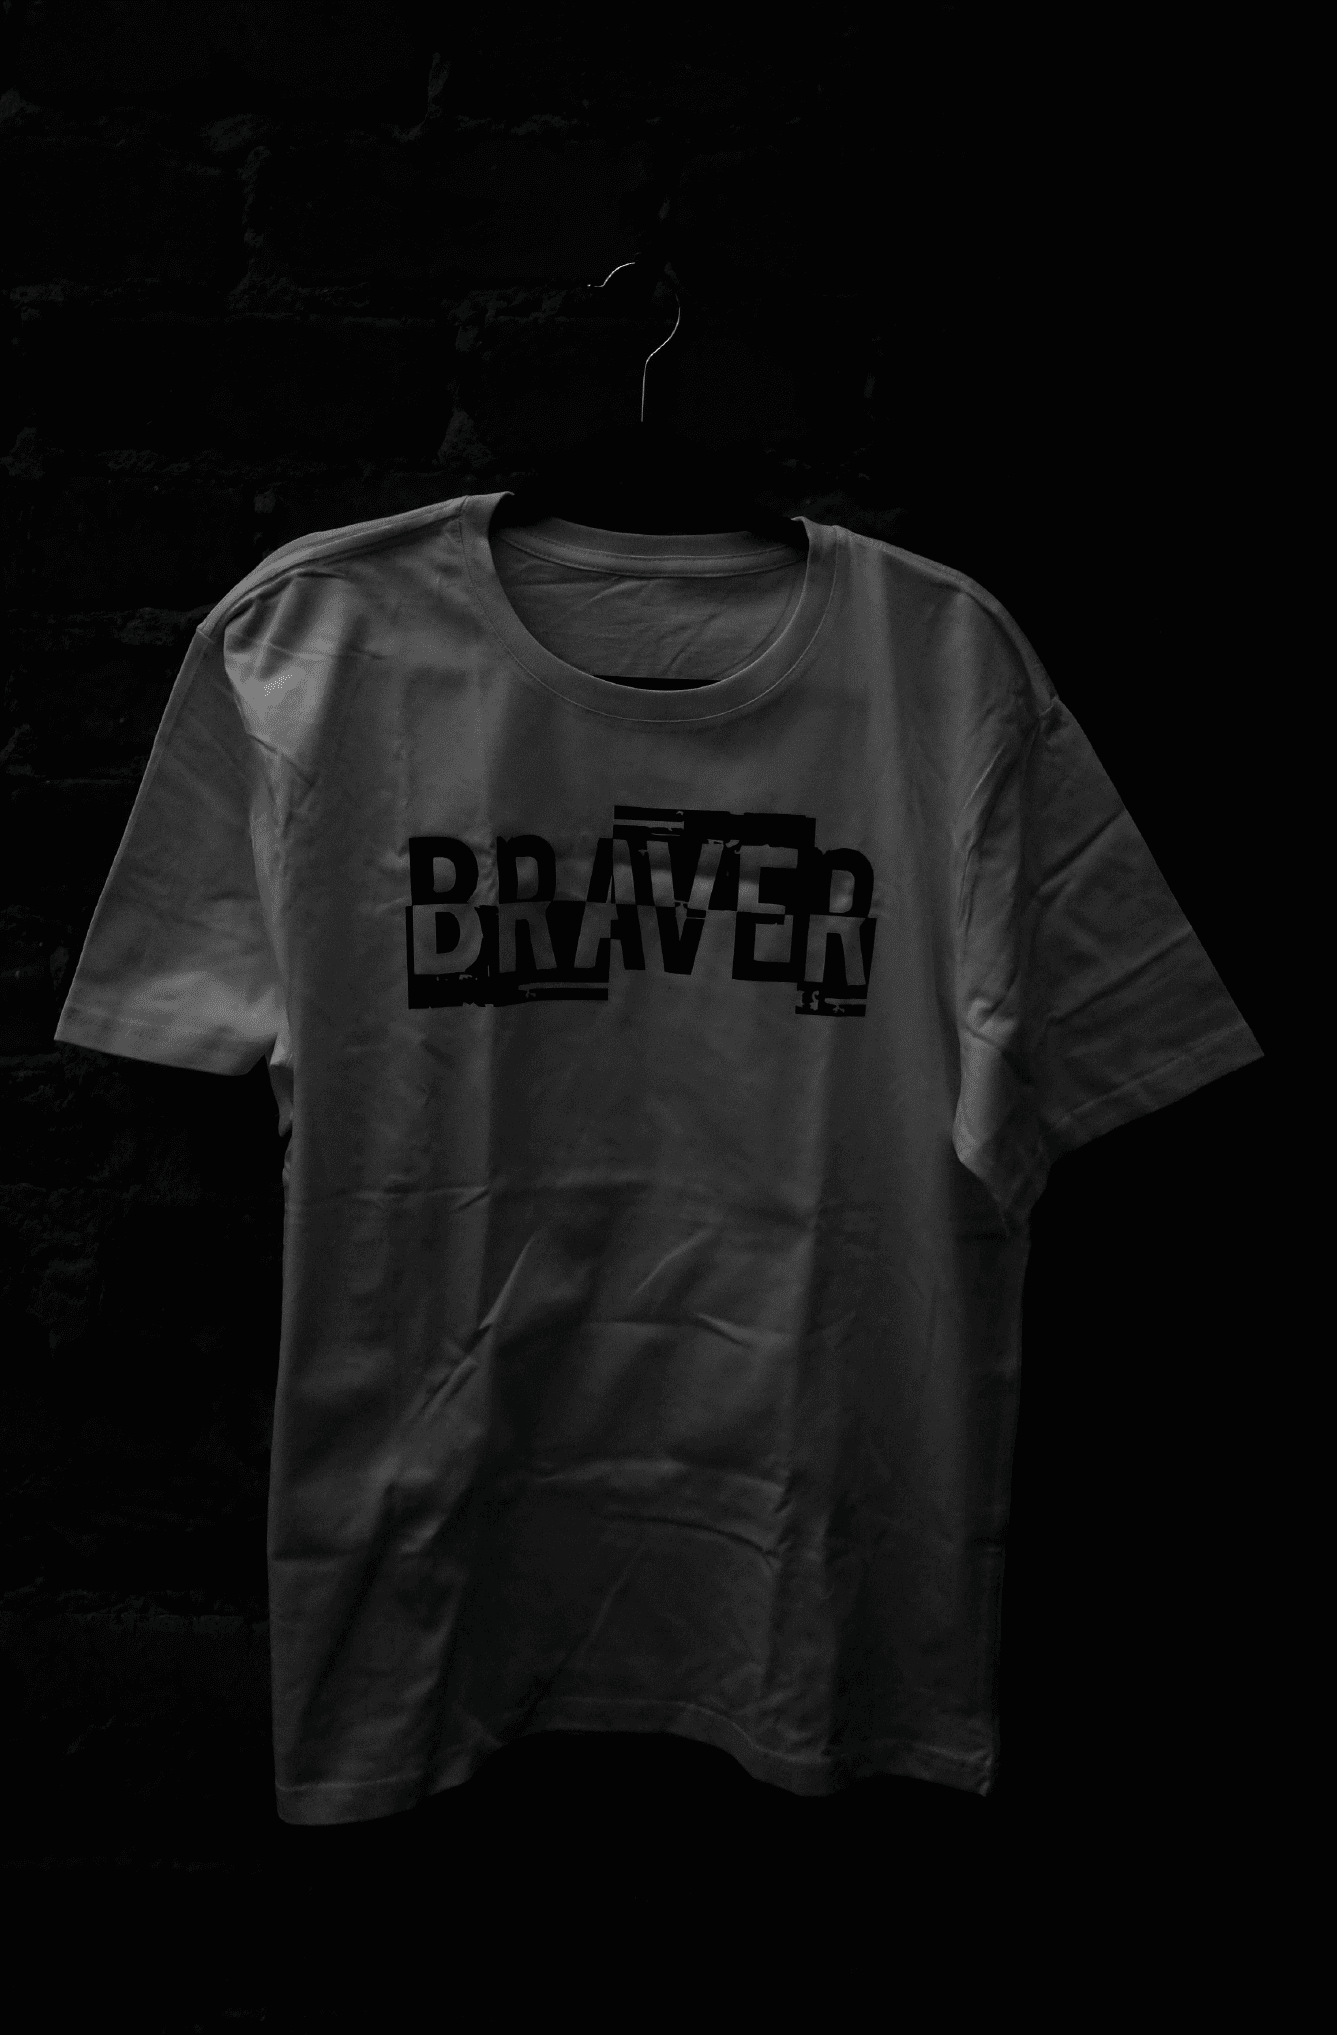 Braver not broken on white tshirt